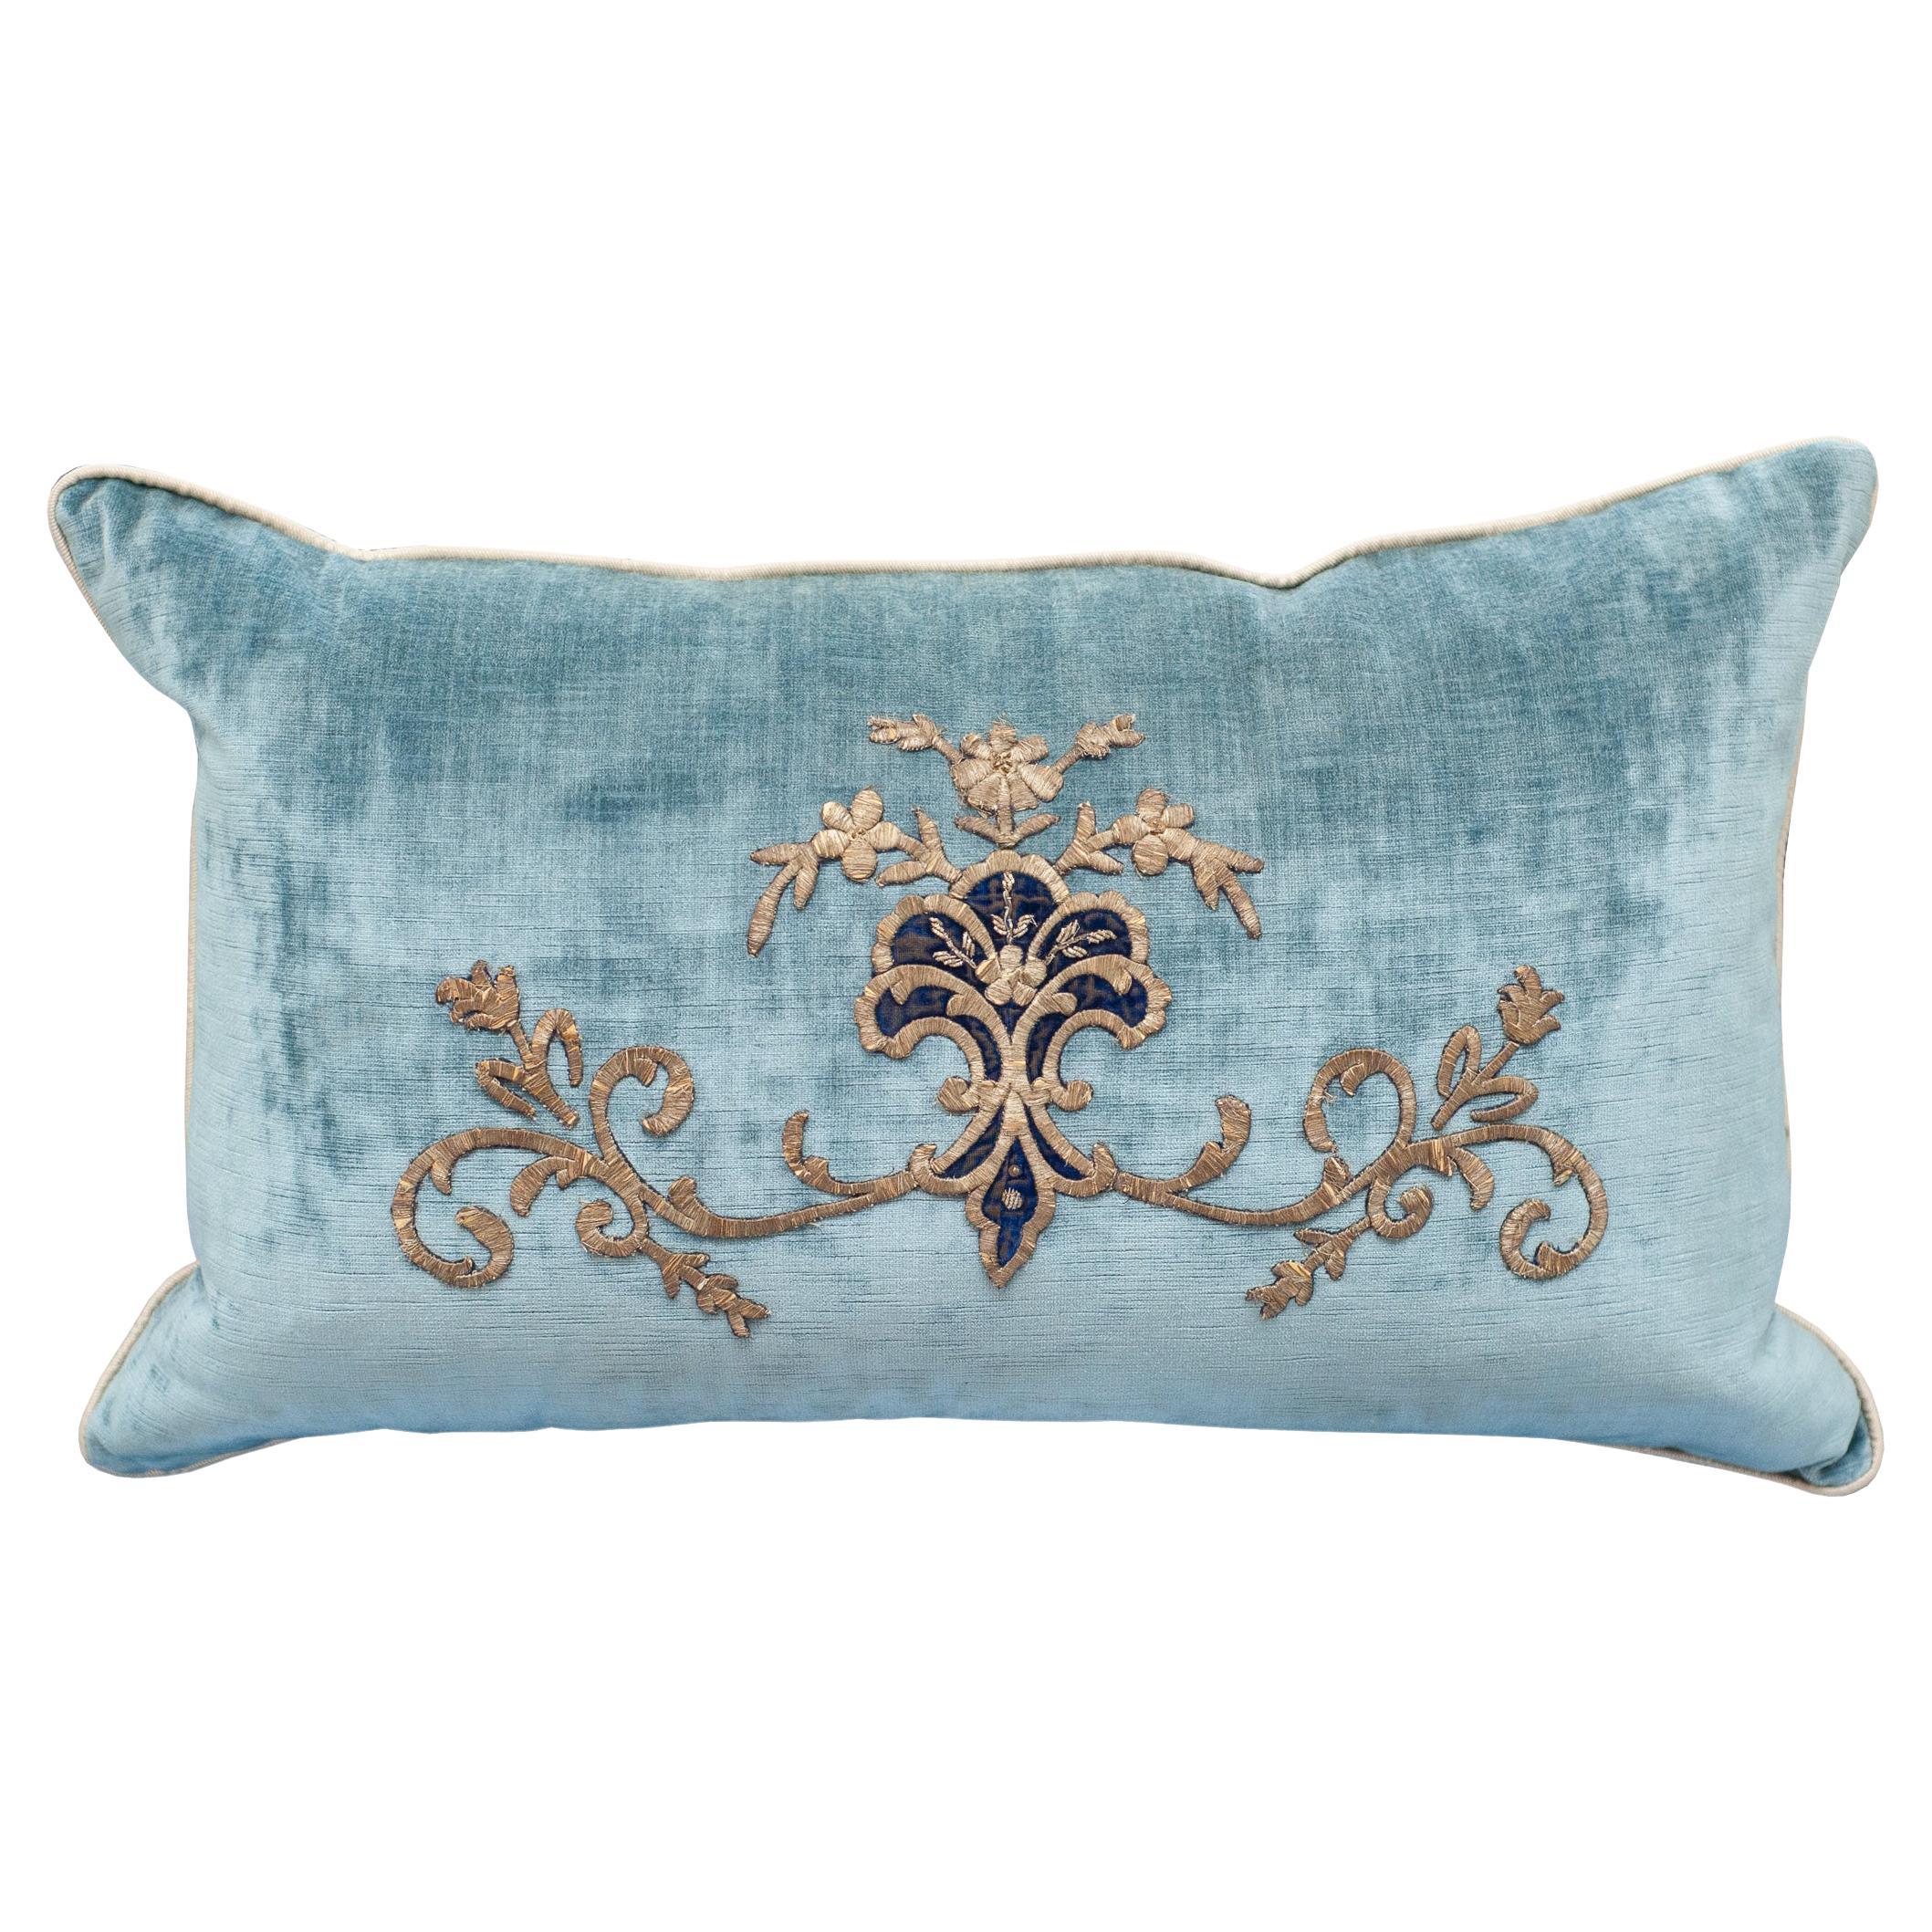 Contemporary Rebecca Vizard Blue Velvet Pillow with Metallic Embroidery